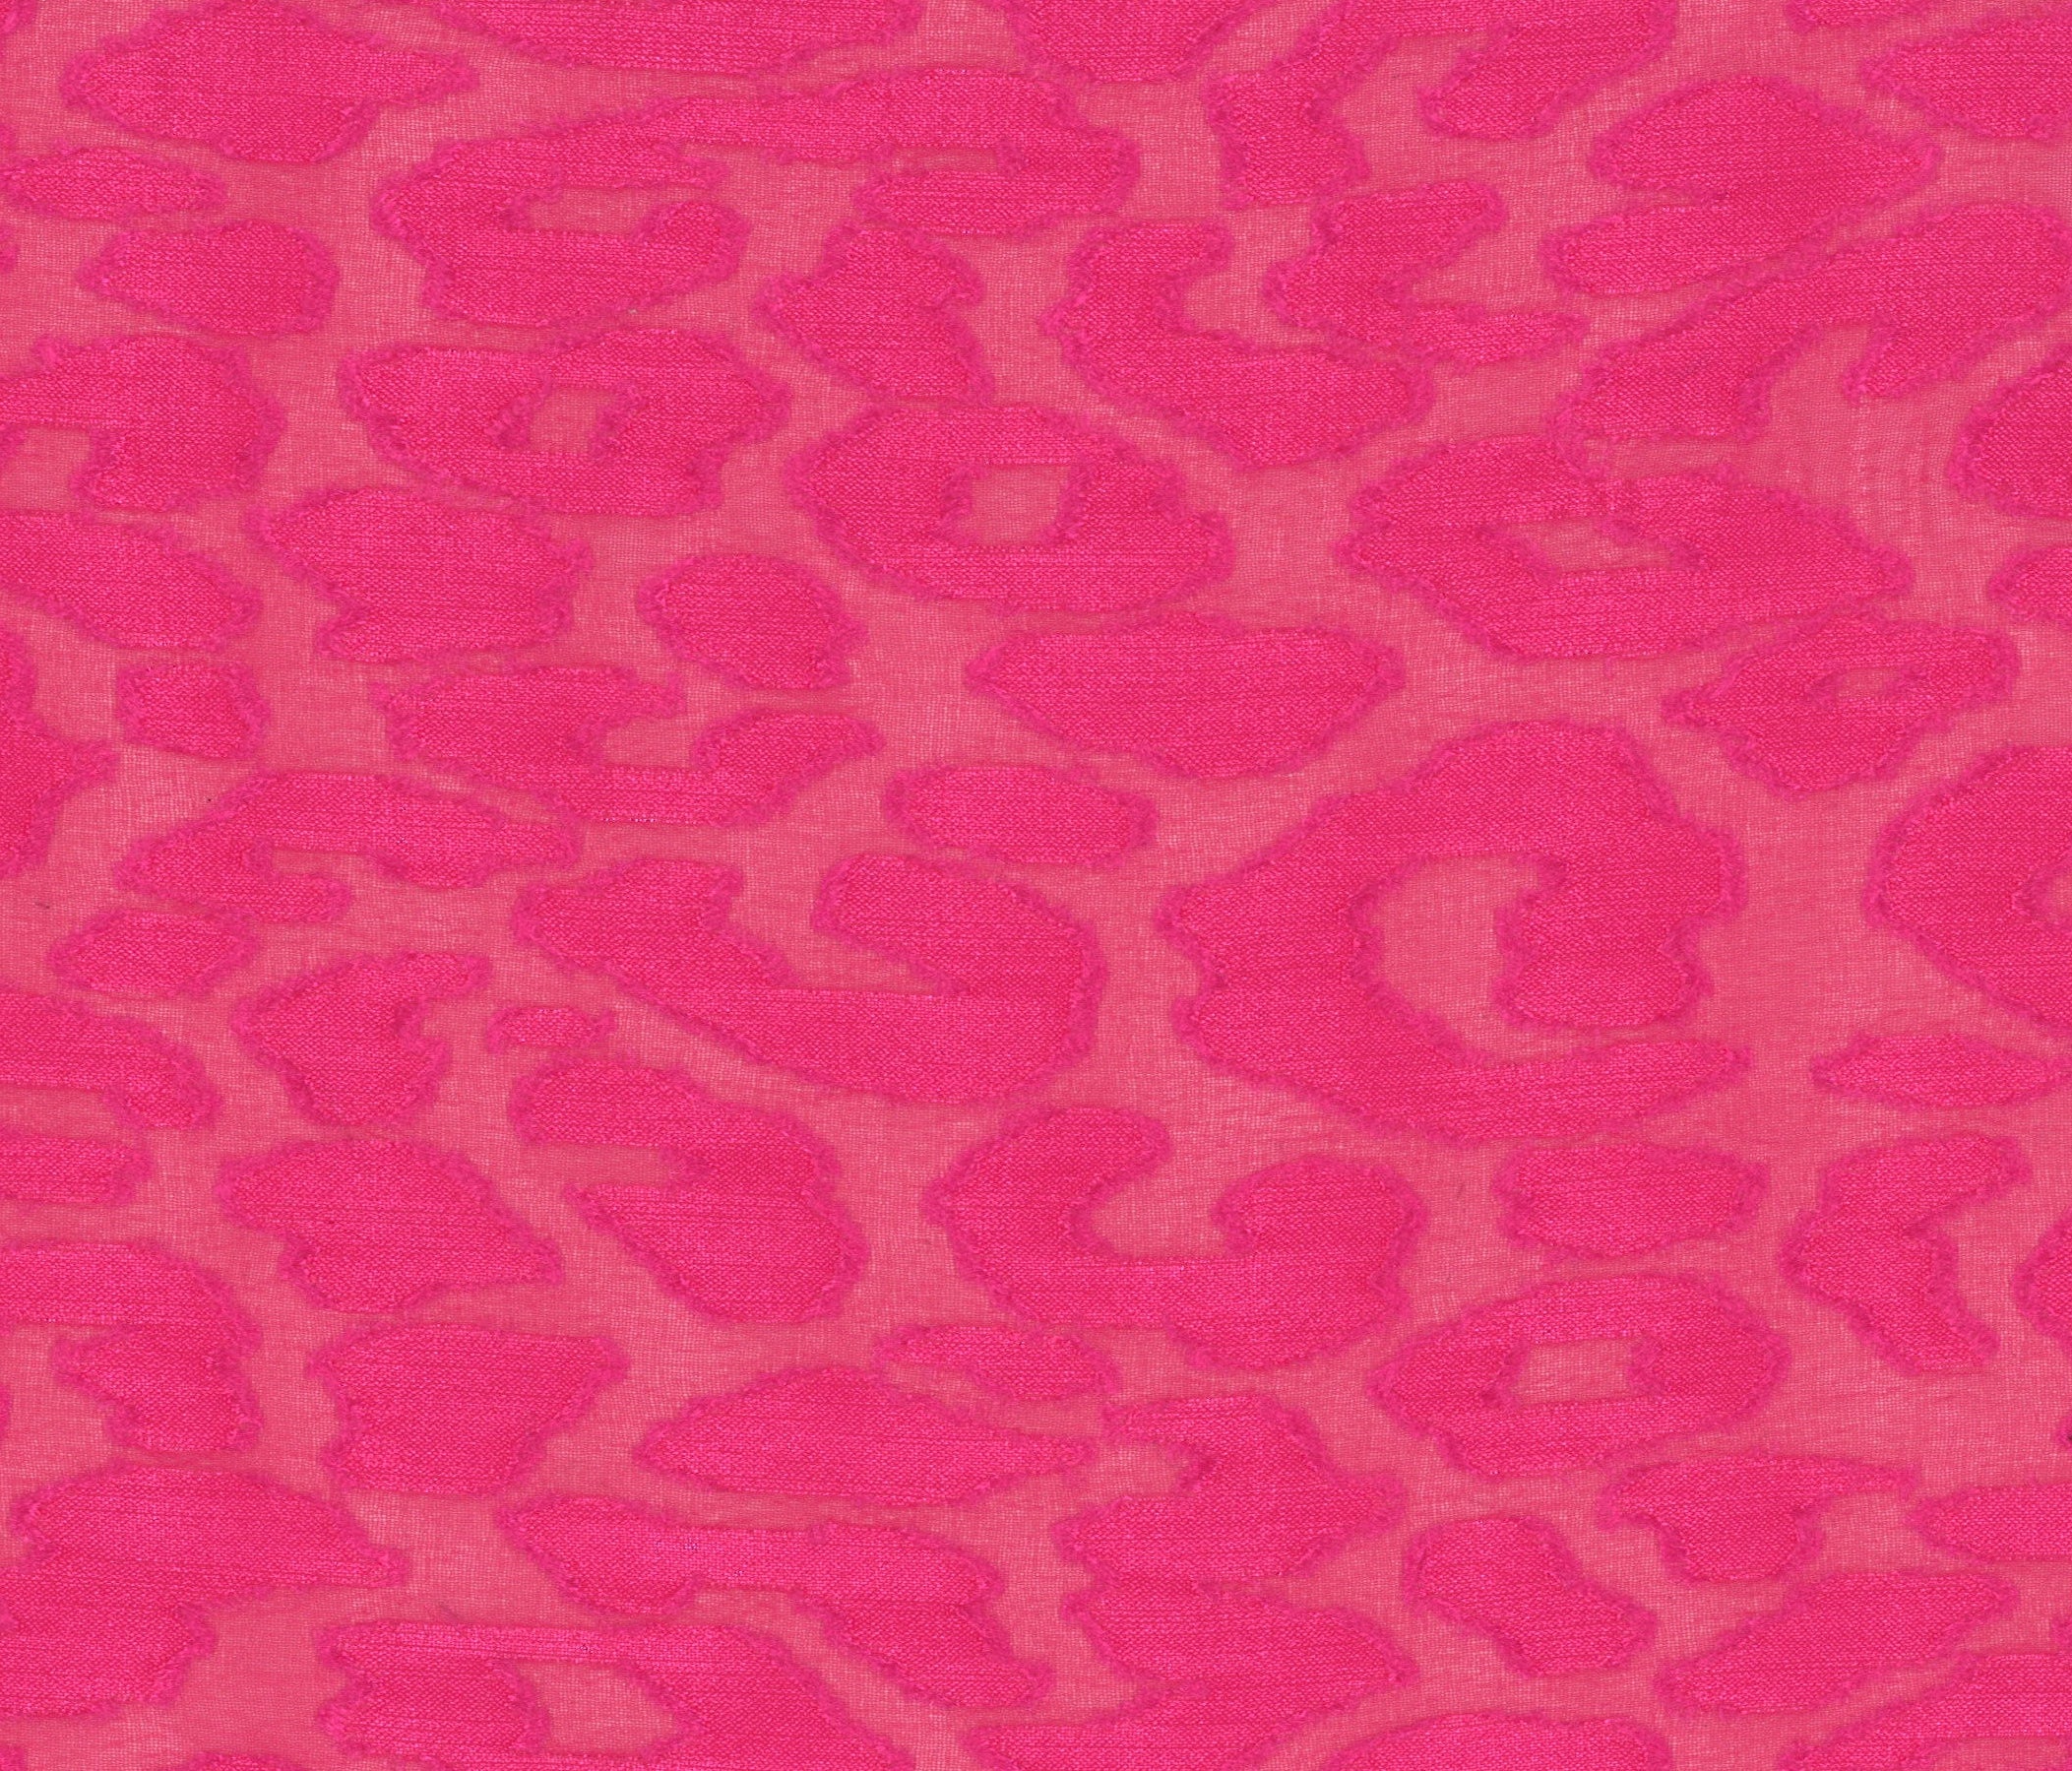 32001-06 Deep Pink Chiffon Polyester Spots Jacquard Burn Out Plain Dyed 100% burn out jacquard pink polyester woven Chiffon, Jacquard, Burn-Out - knit fabric - woven fabric - fabric company - fabric wholesale - fabric b2b - fabric factory - high quality fabric - hong kong fabric - fabric hk - acetate fabric - cotton fabric - linen fabric - metallic fabric - nylon fabric - polyester fabric - spandex fabric - chun wing hing - cwh hk - fabric worldwide ship - 針織布 - 梳織布 - 布料公司- 布料批發 - 香港布料 - 秦榮興